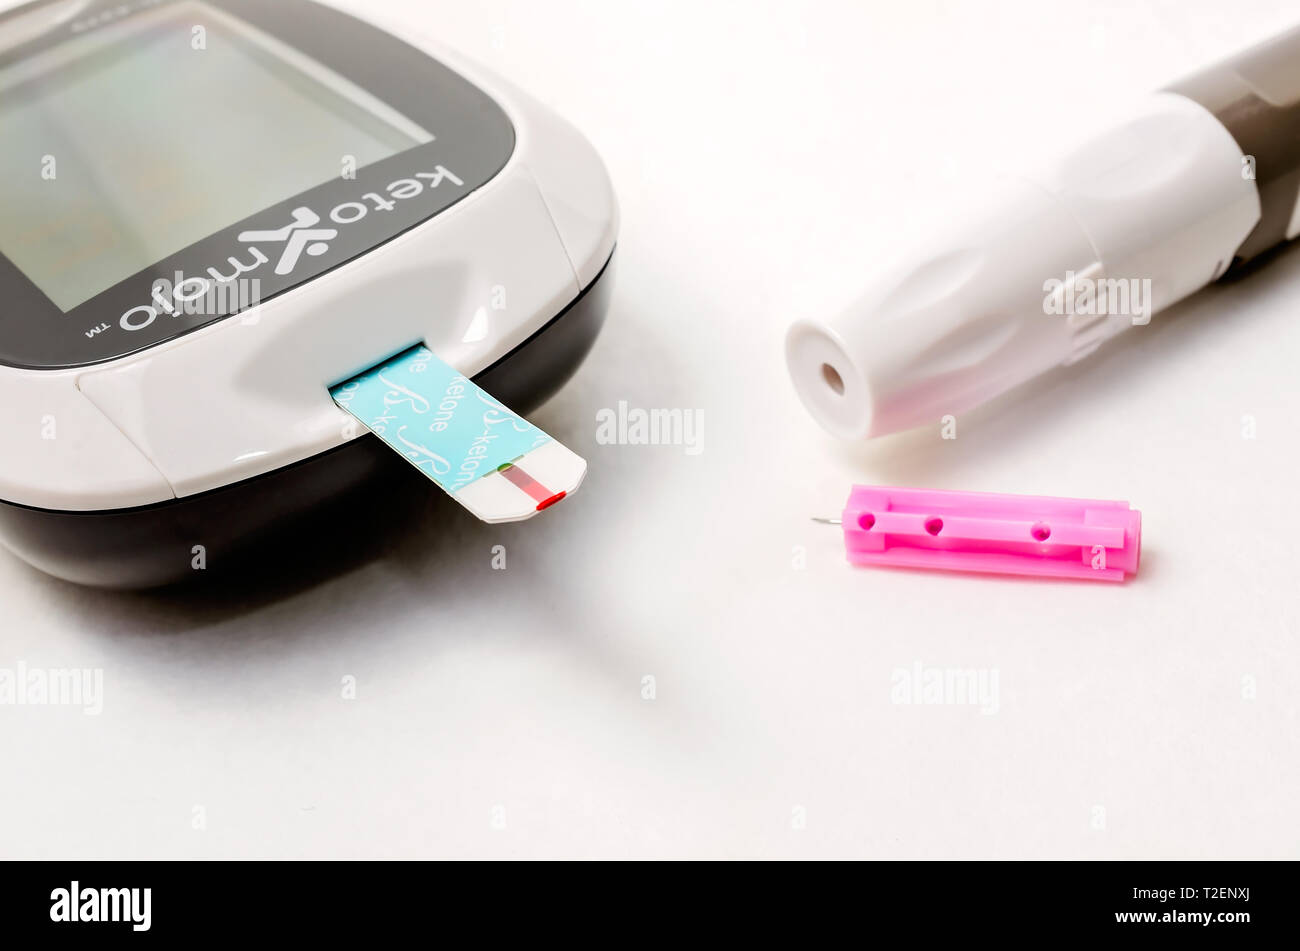 Un Keto-Mojo cetona y medidor de glucosa en sangre es la foto en blanco,  junto con las tiras de prueba de glucosa y cetonas, las agujas desechables  y lancet dispositivo Fotografía de